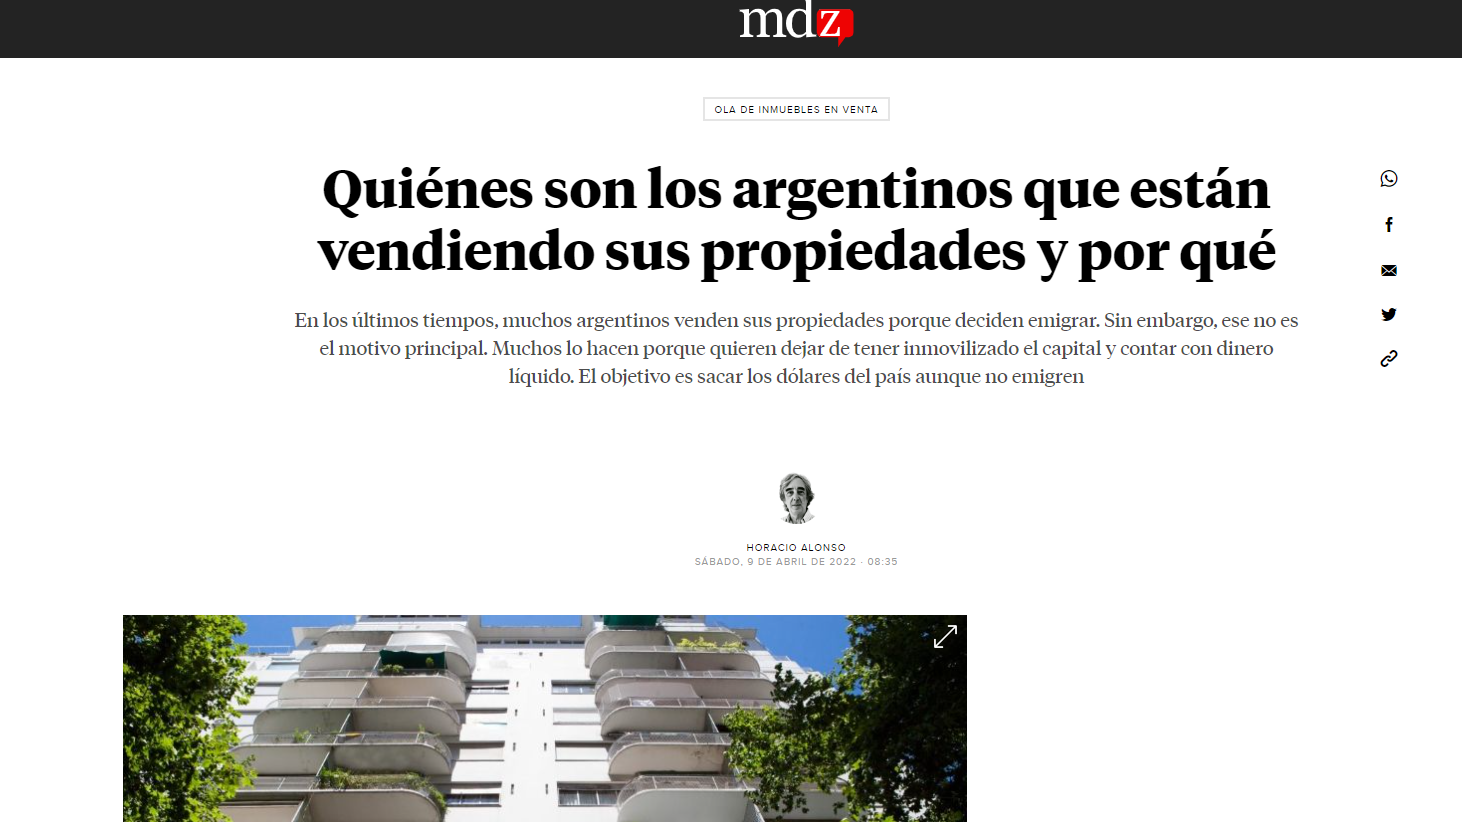 Quiénes son los argentinos que están vendiendo sus propiedades y por qué